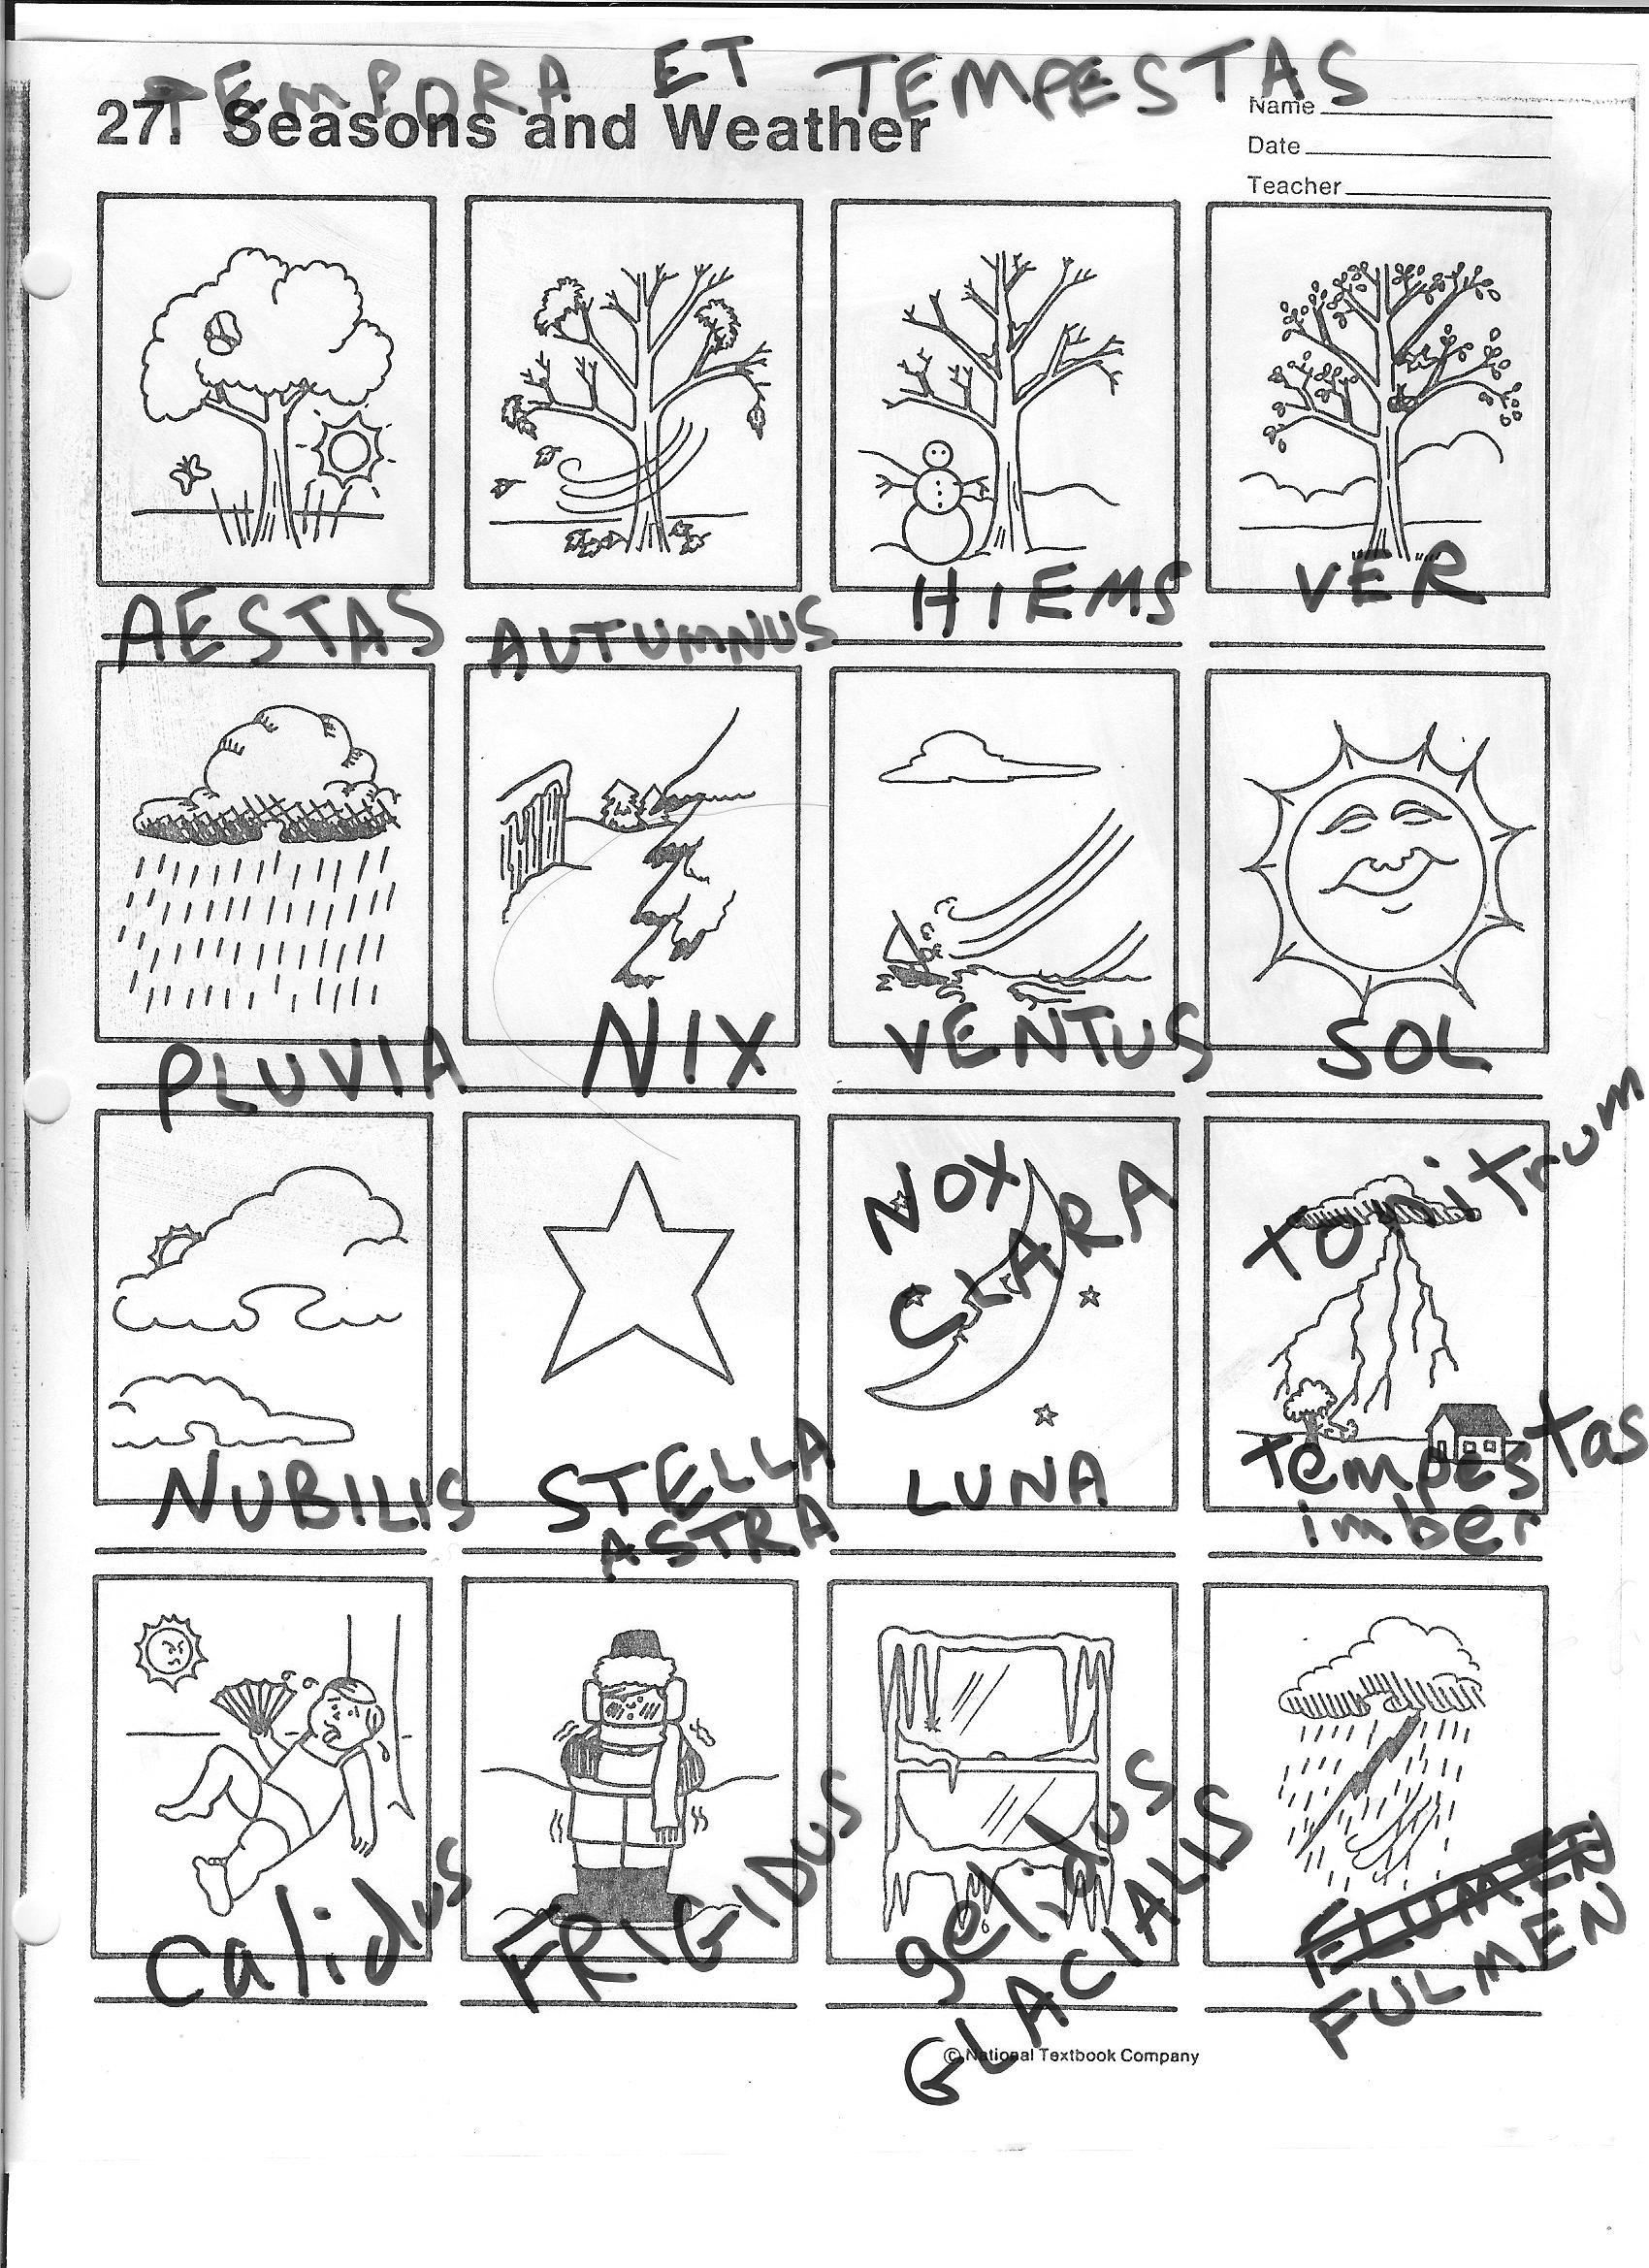 Spanish Weather Words Worksheet Image